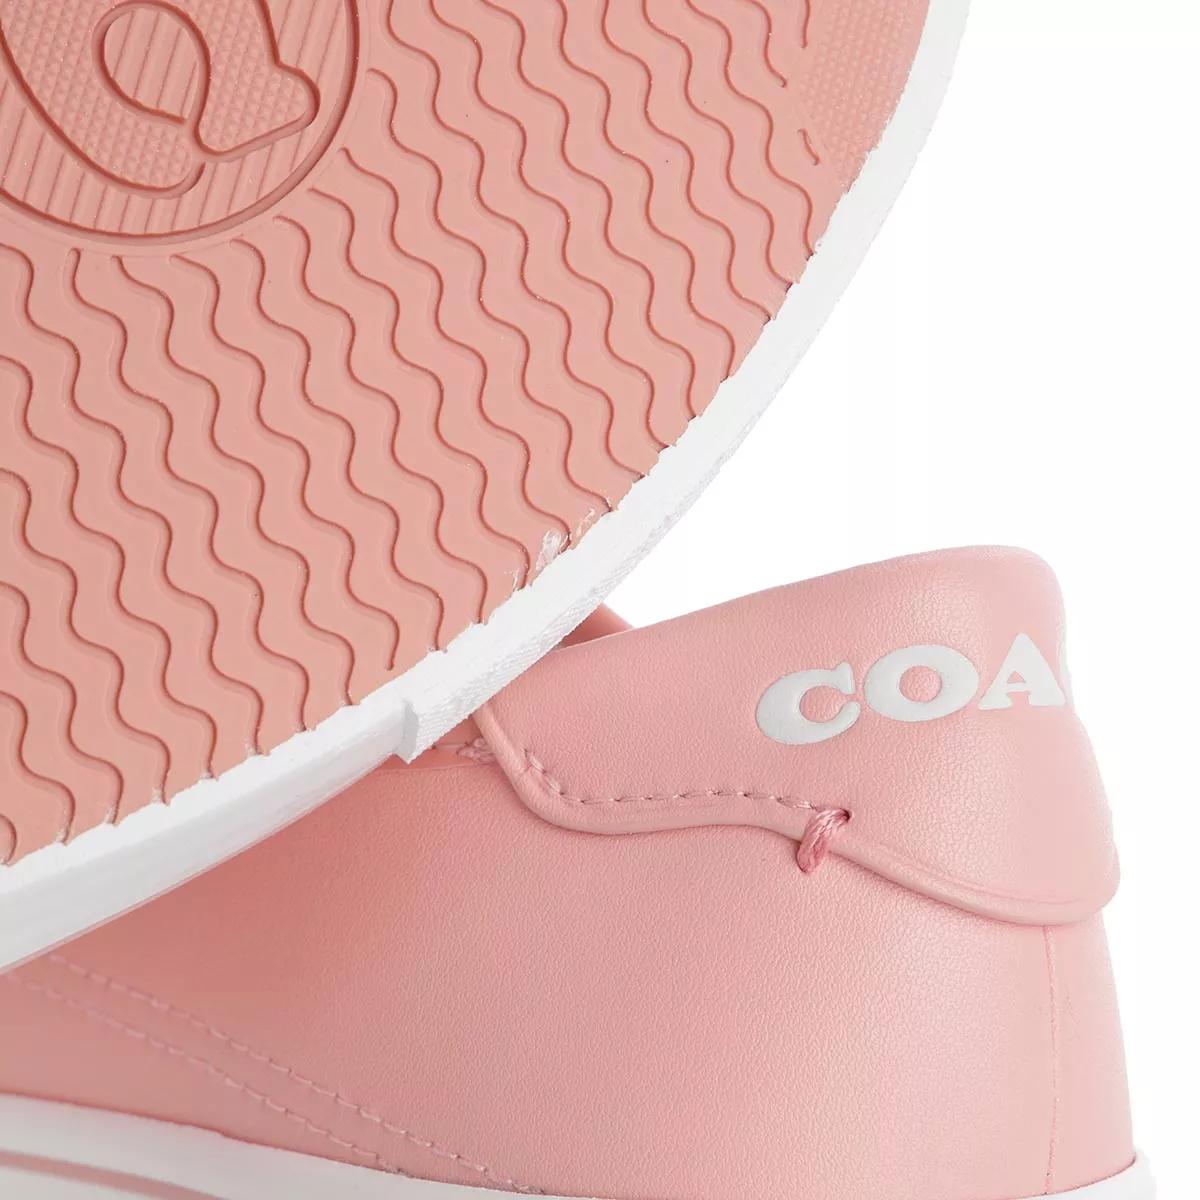 Coach Sneakers - Citysole Platform Leather - Gr. 36 (EU) - in Rosa - für Damen von Coach